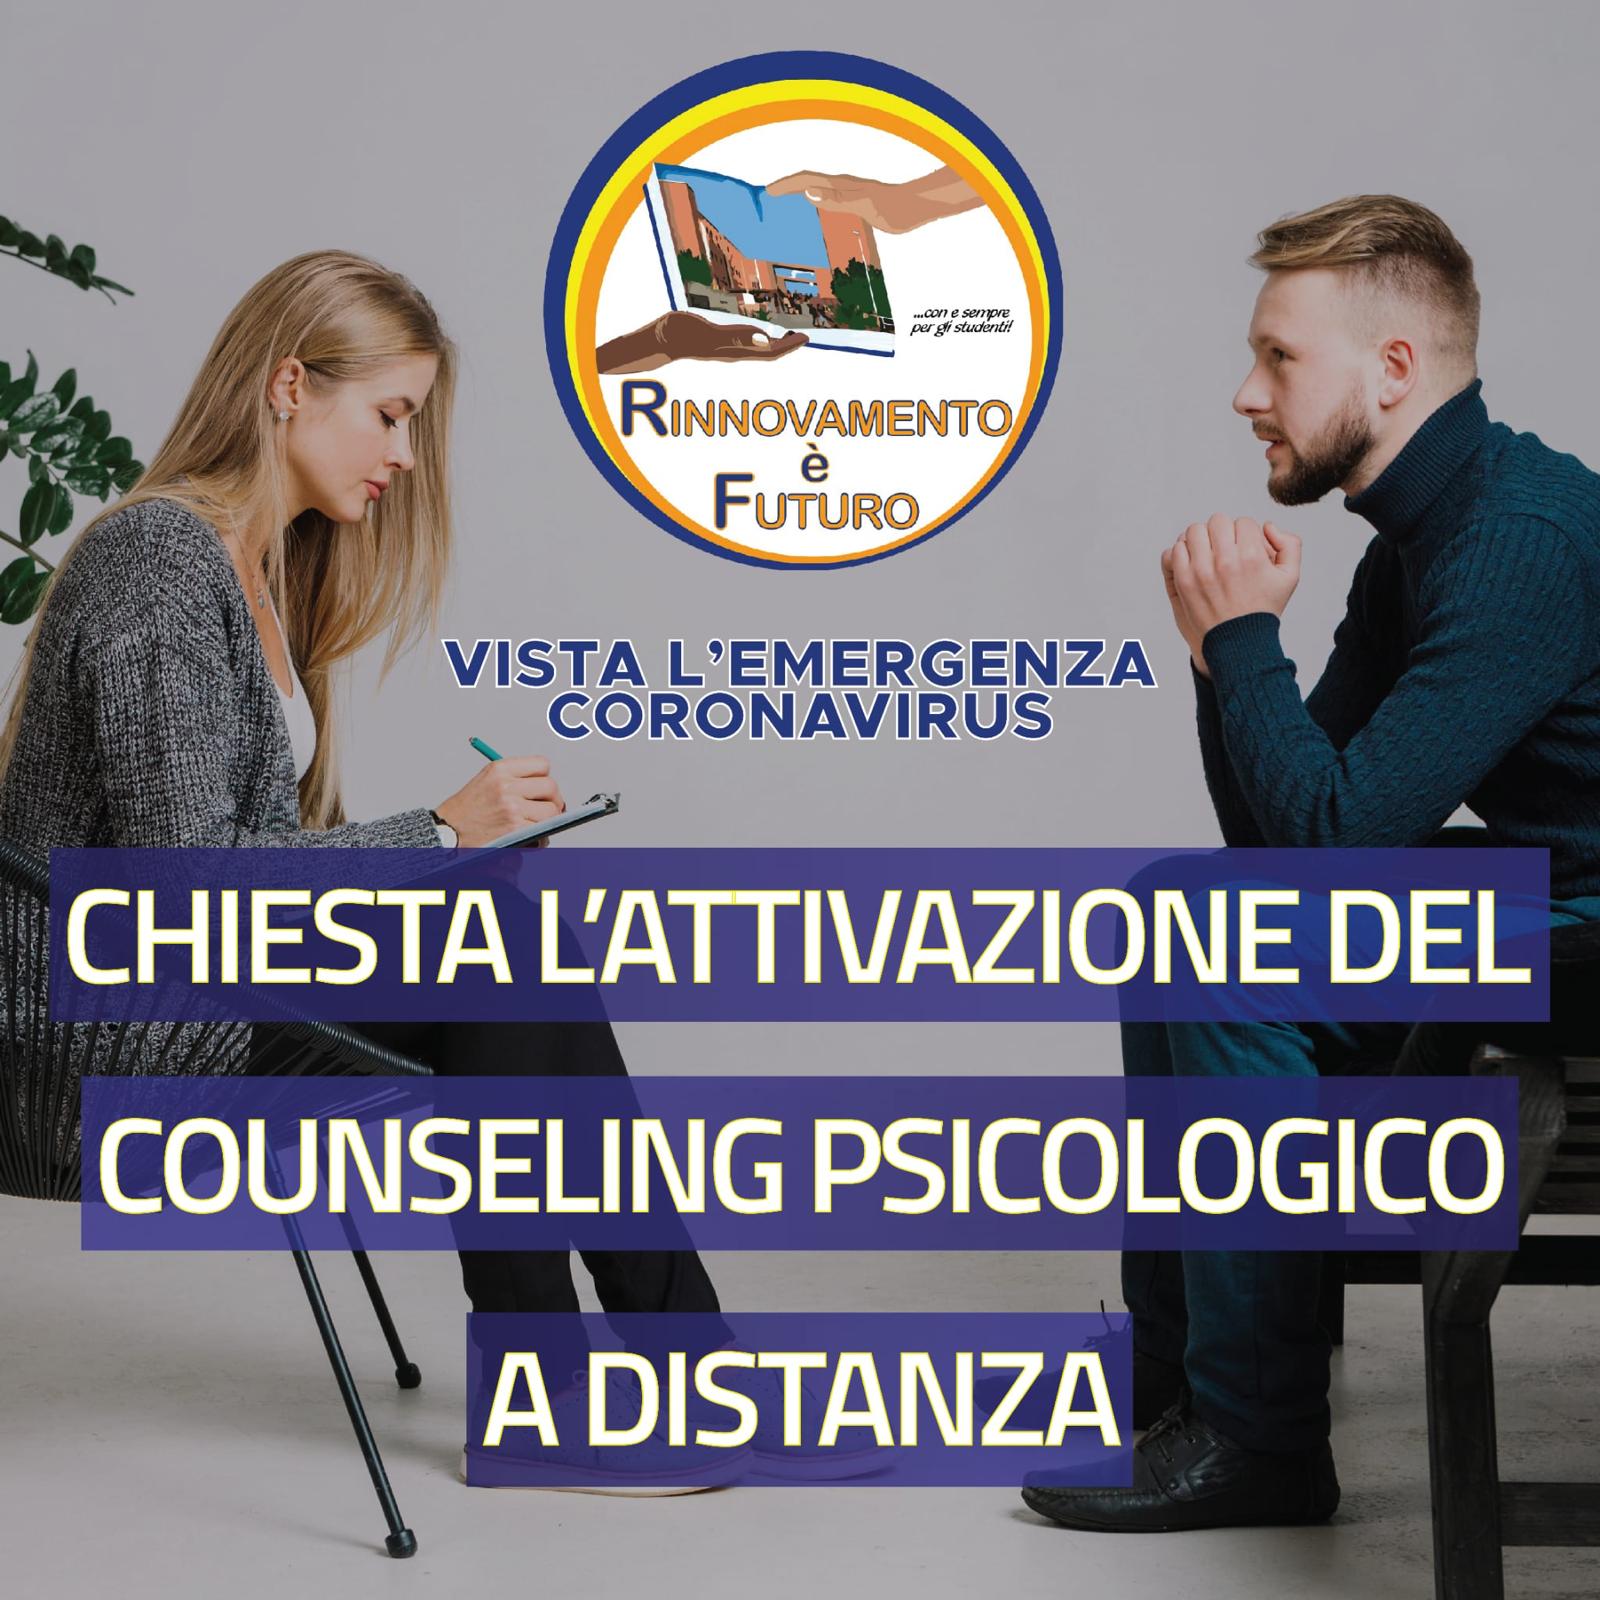 CHIESTA L'ATTIVAZIONE DEL COUNSELING PSICOLOGICO A DISTANZA